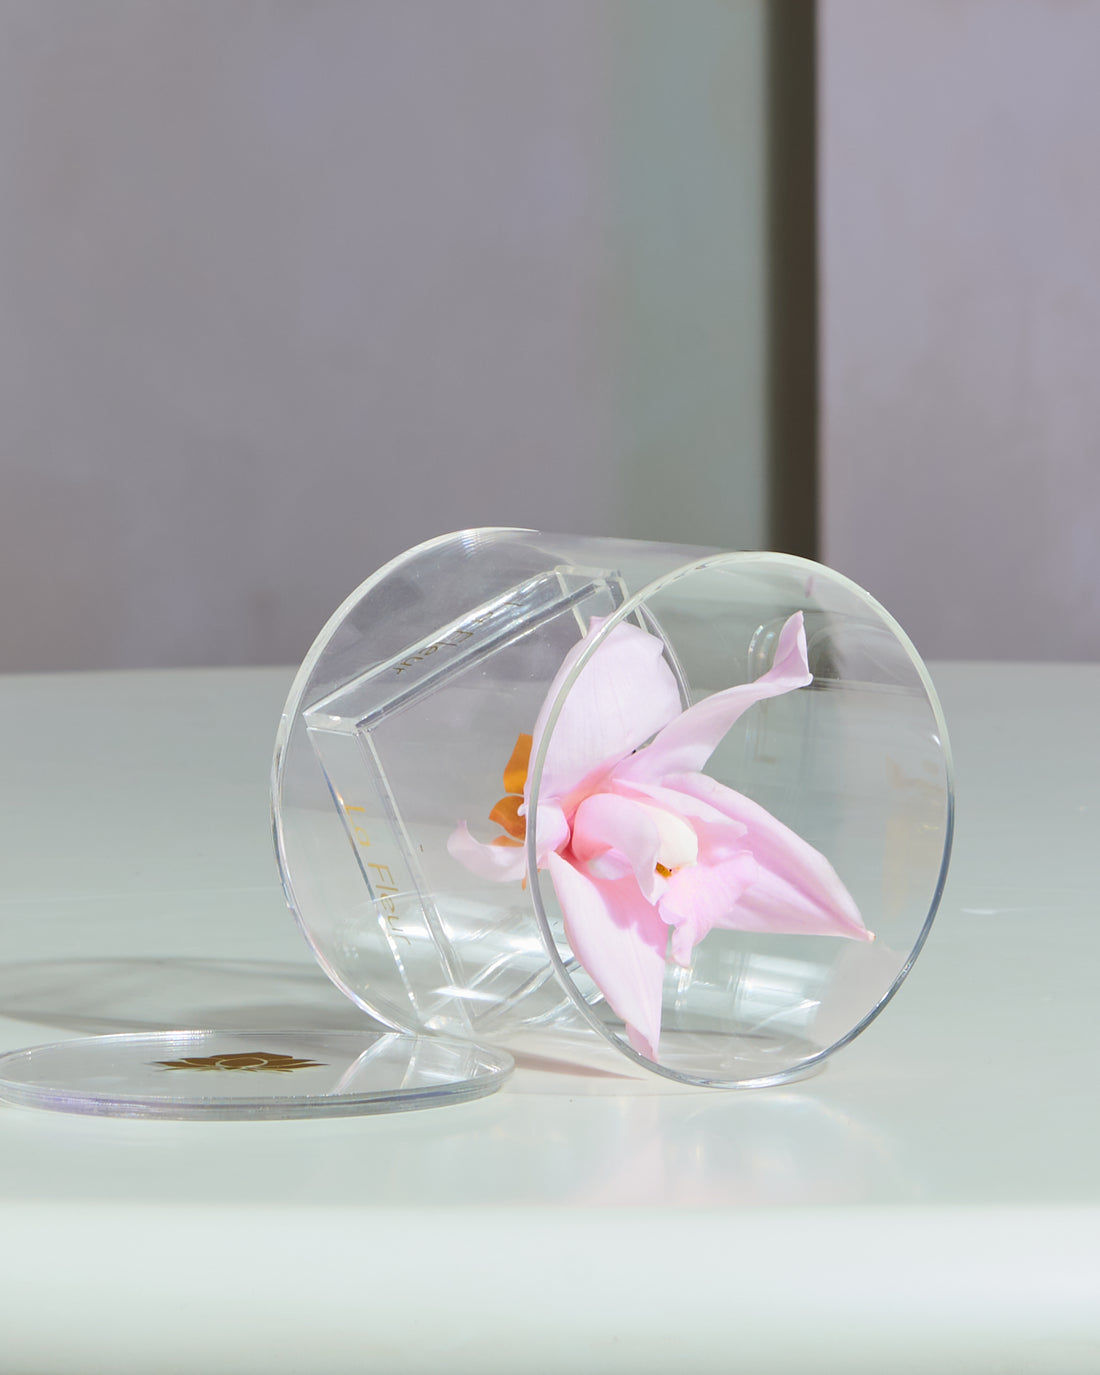 Orchid Single by La Fleur Lifetime Flowers